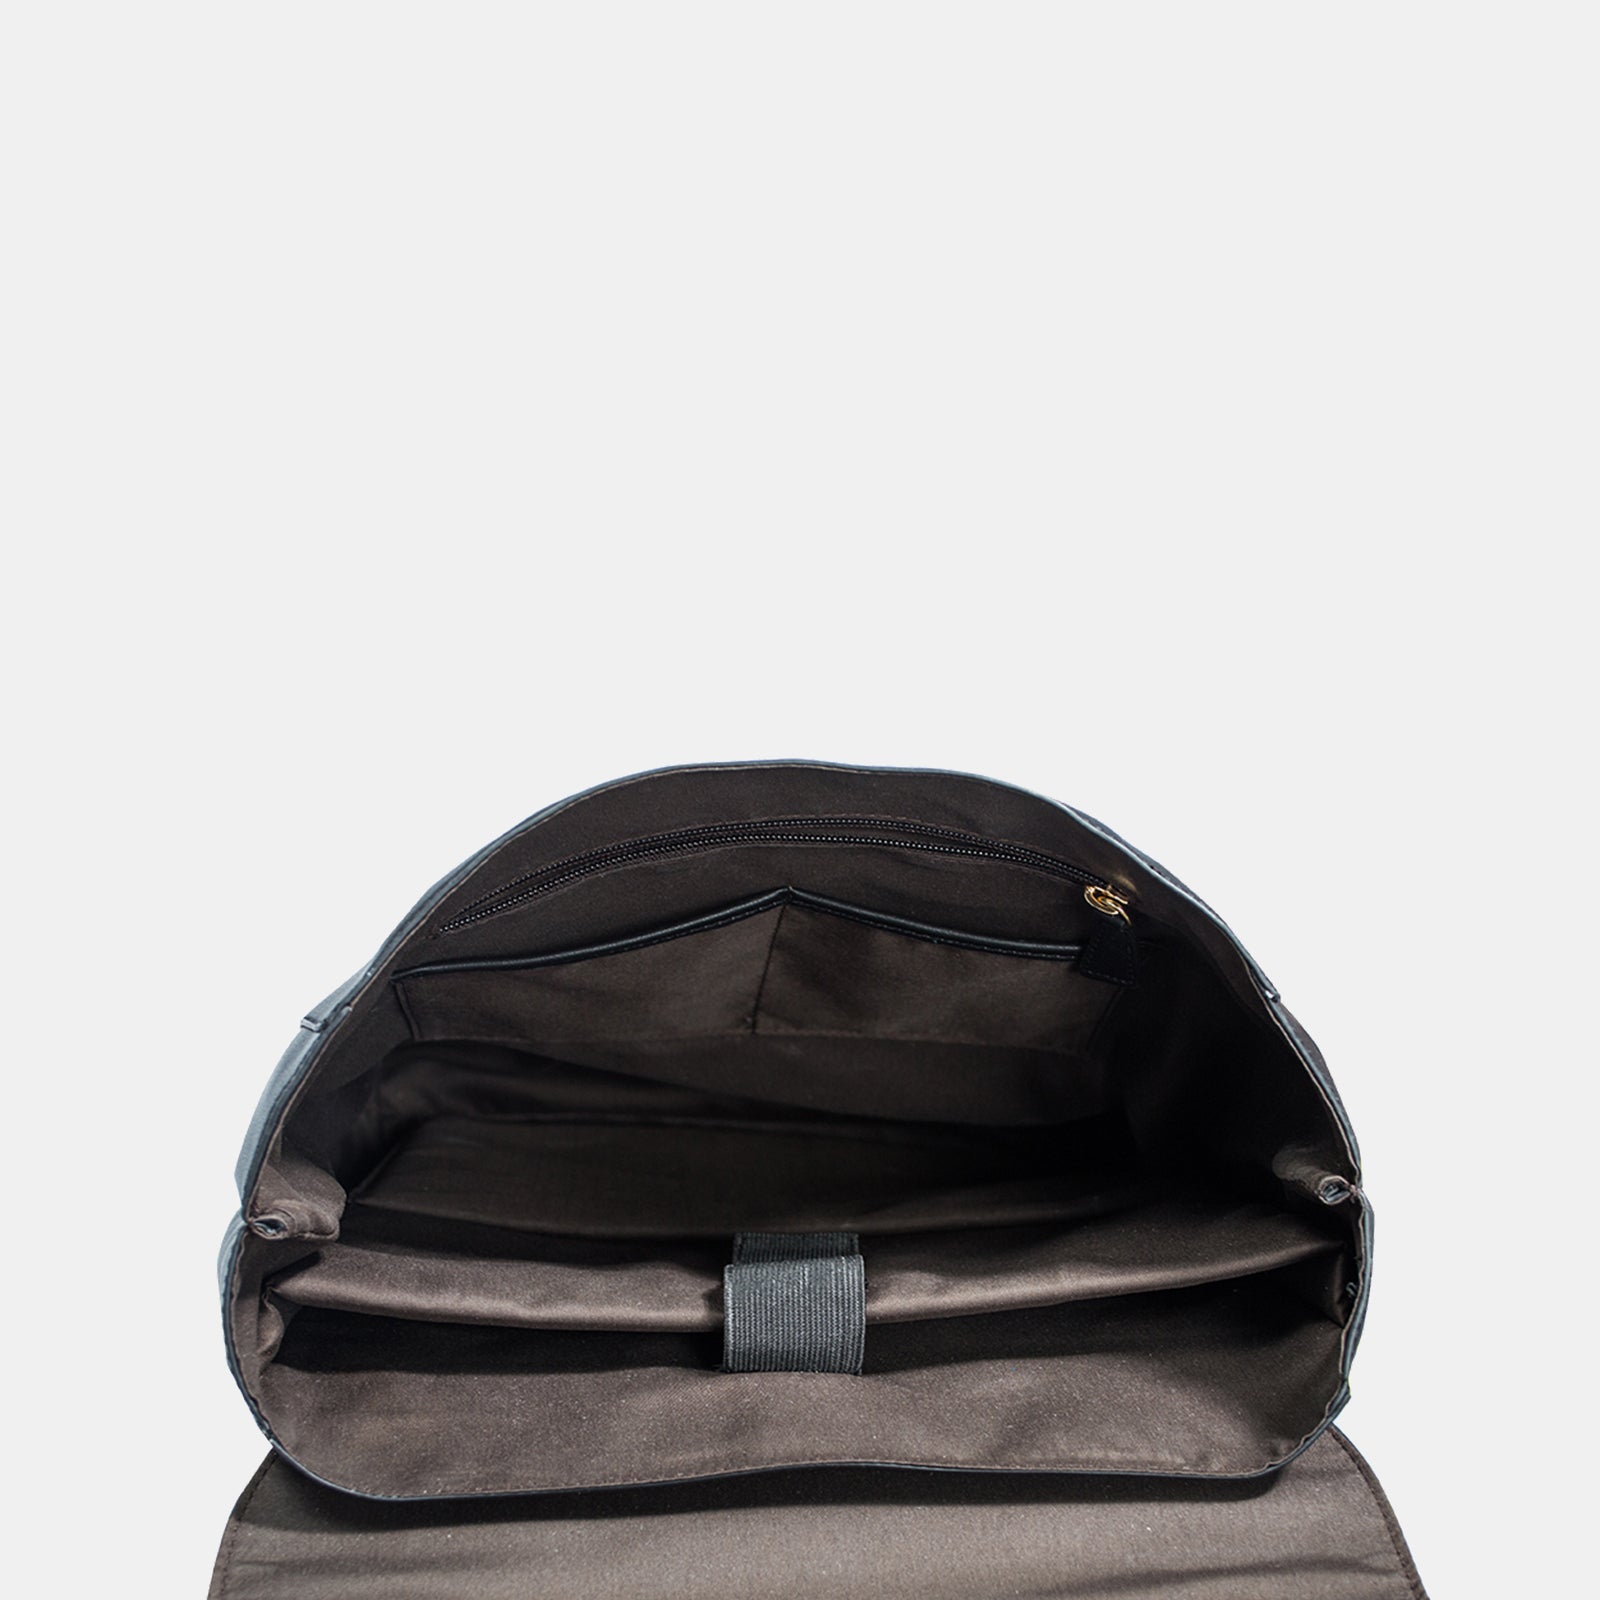 Estarer Women Leather 15.6 Inch Laptop Backpack College Bag Black